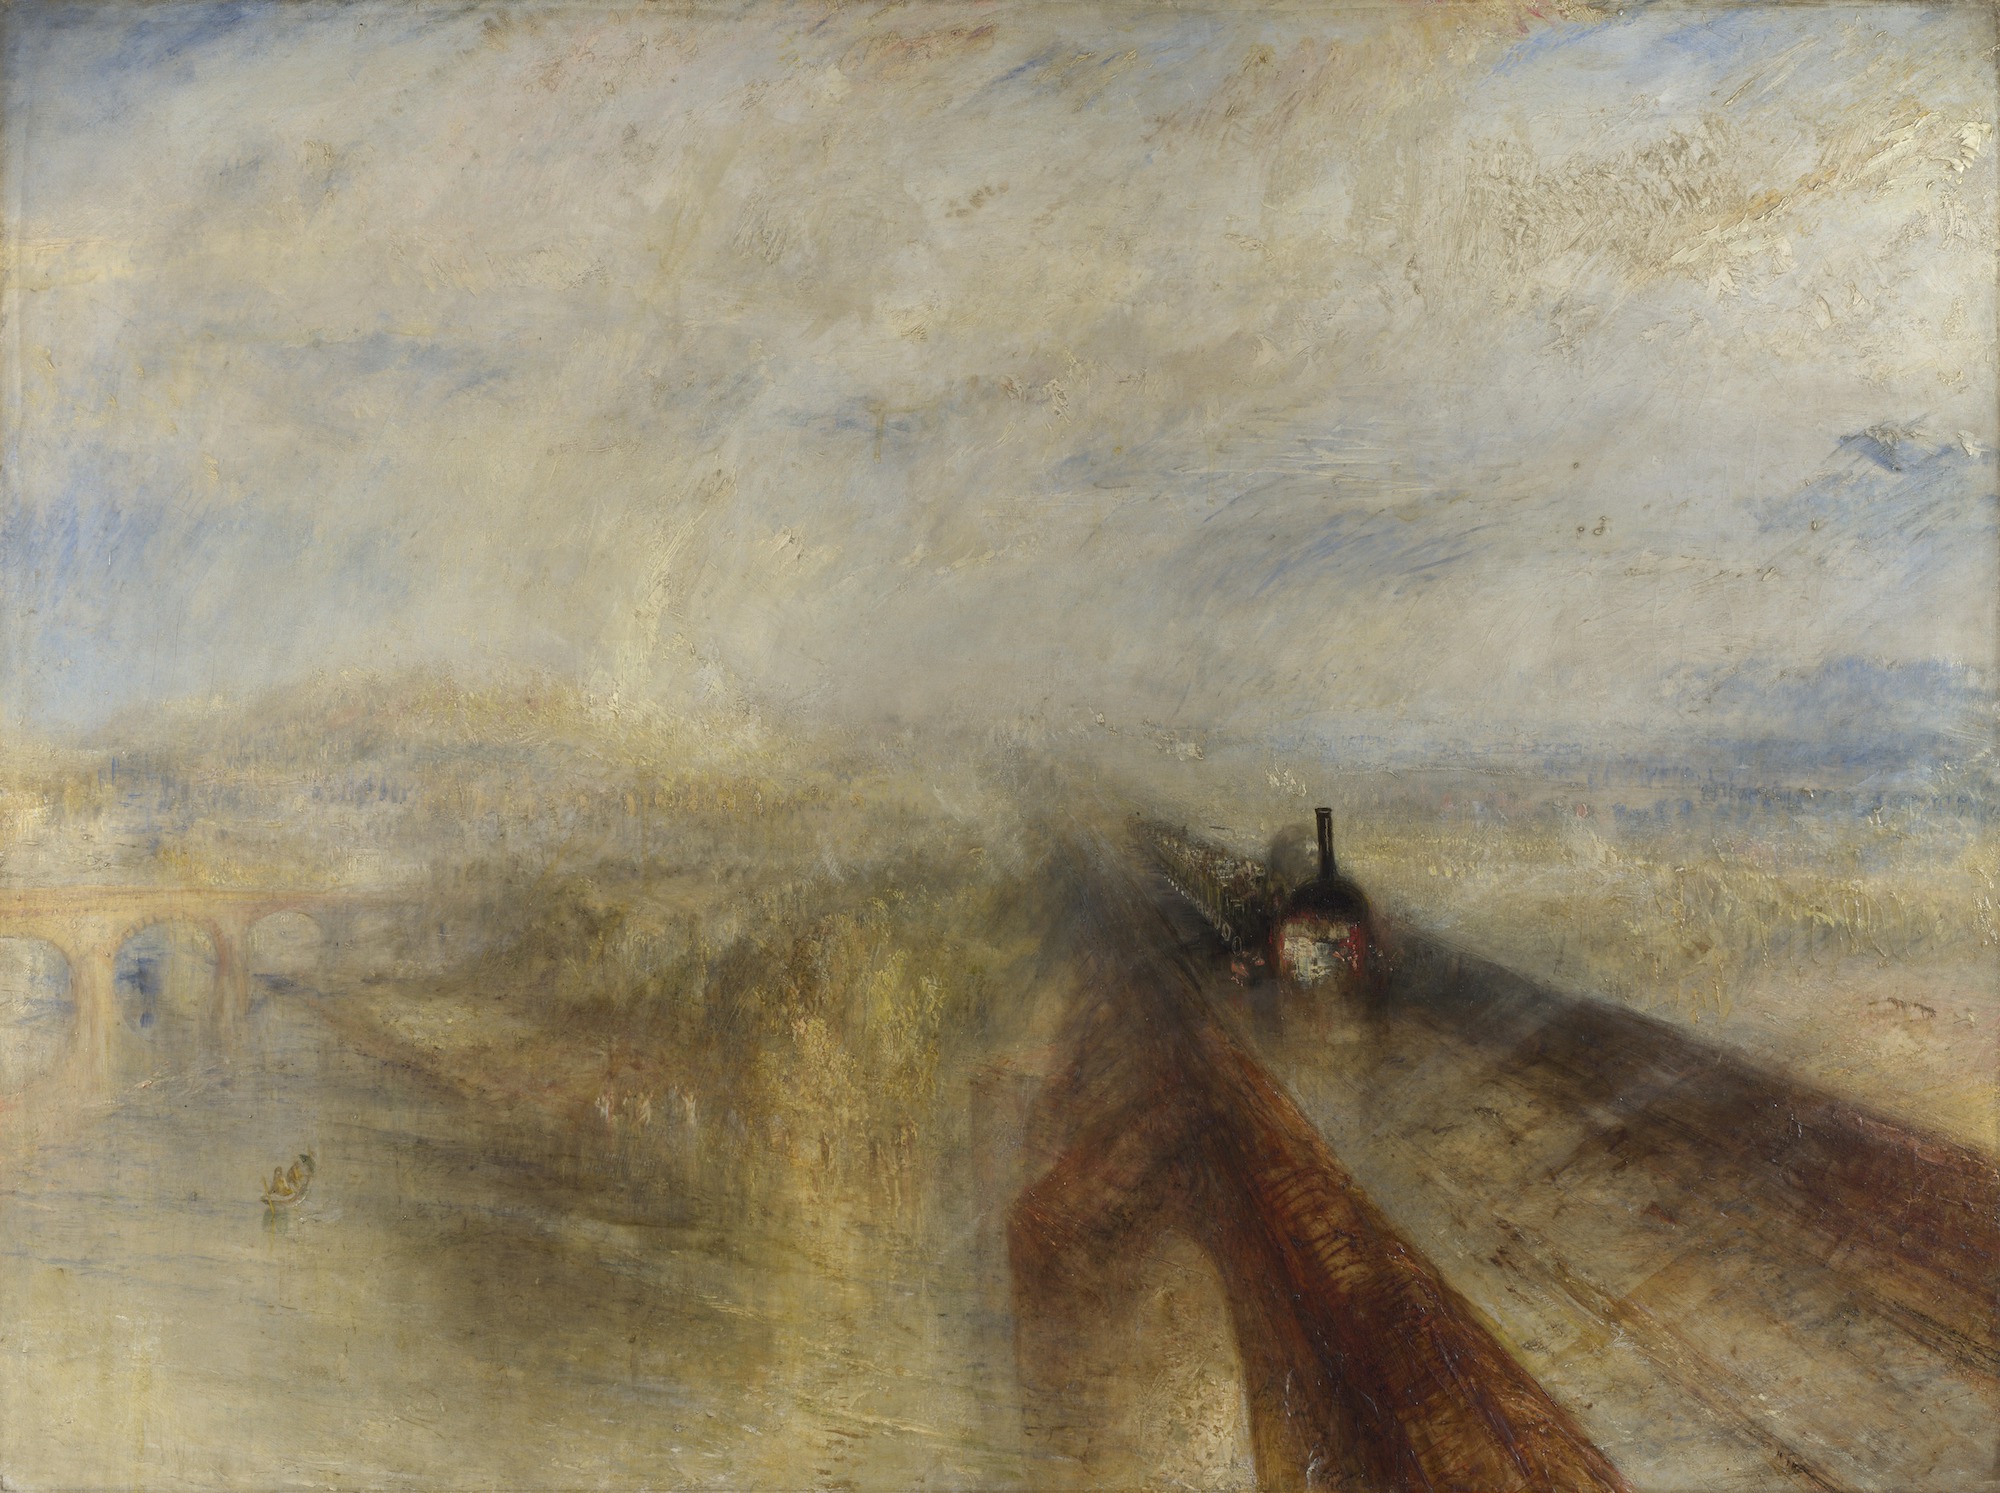 雨水、蒸汽和速度 - 英国大西部铁路 by 约瑟夫 · 马罗德 · 威廉 · 透纳 - 1844 - 91 x 122 cm 